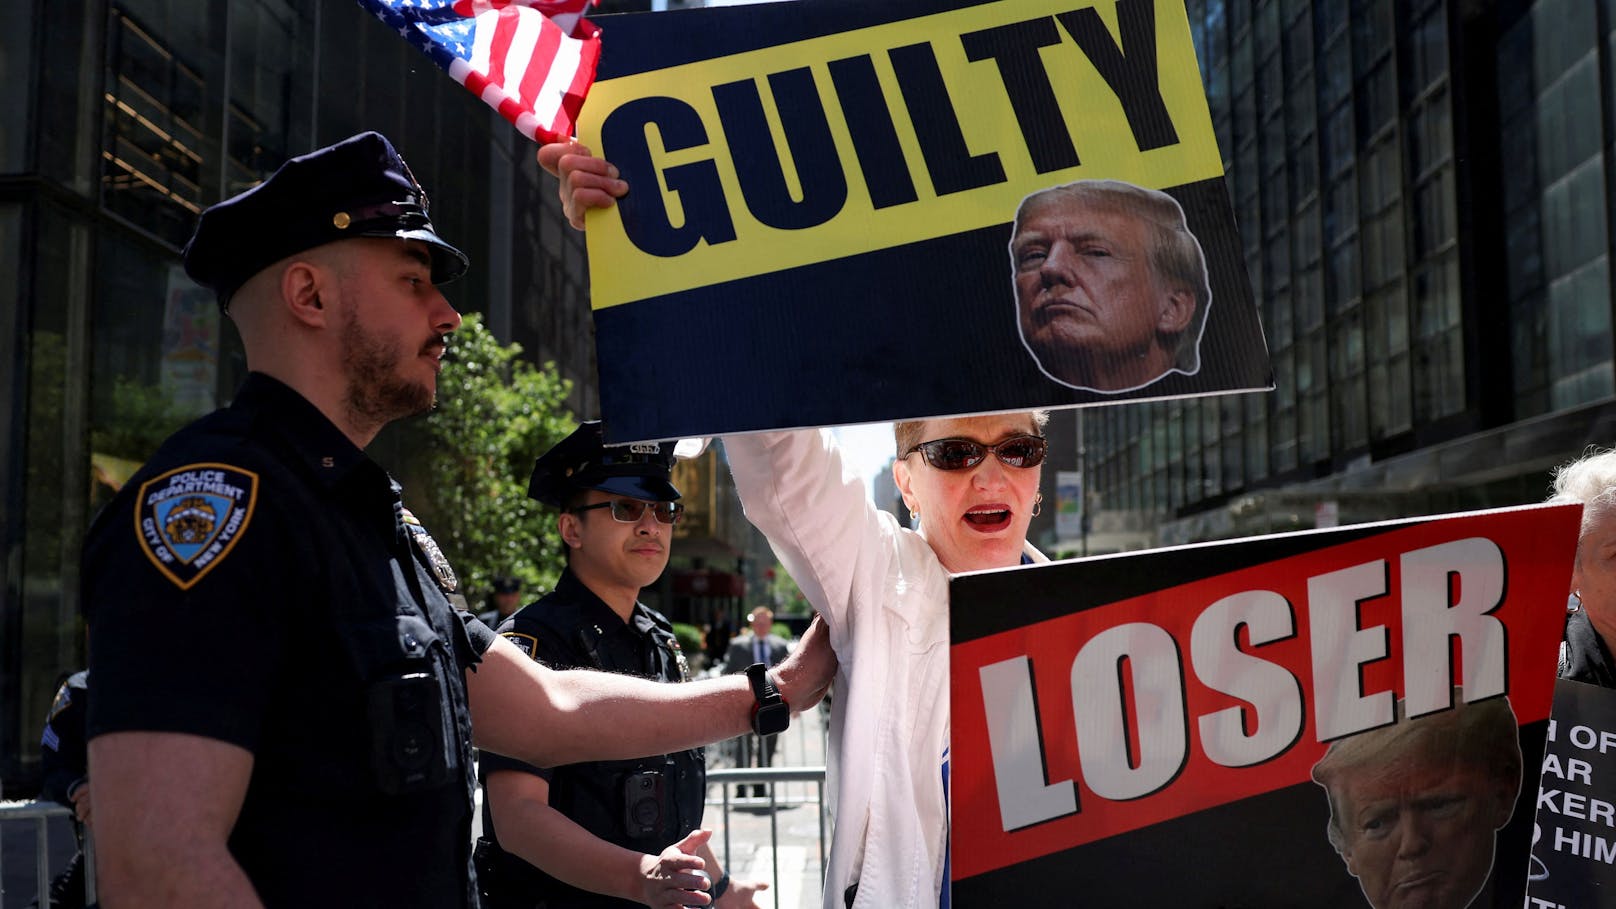 Am Tag nach der Verurteilung im Strafprozess demonstriert eine Trump-Gegnerin vor dem Trump Tower in New York.